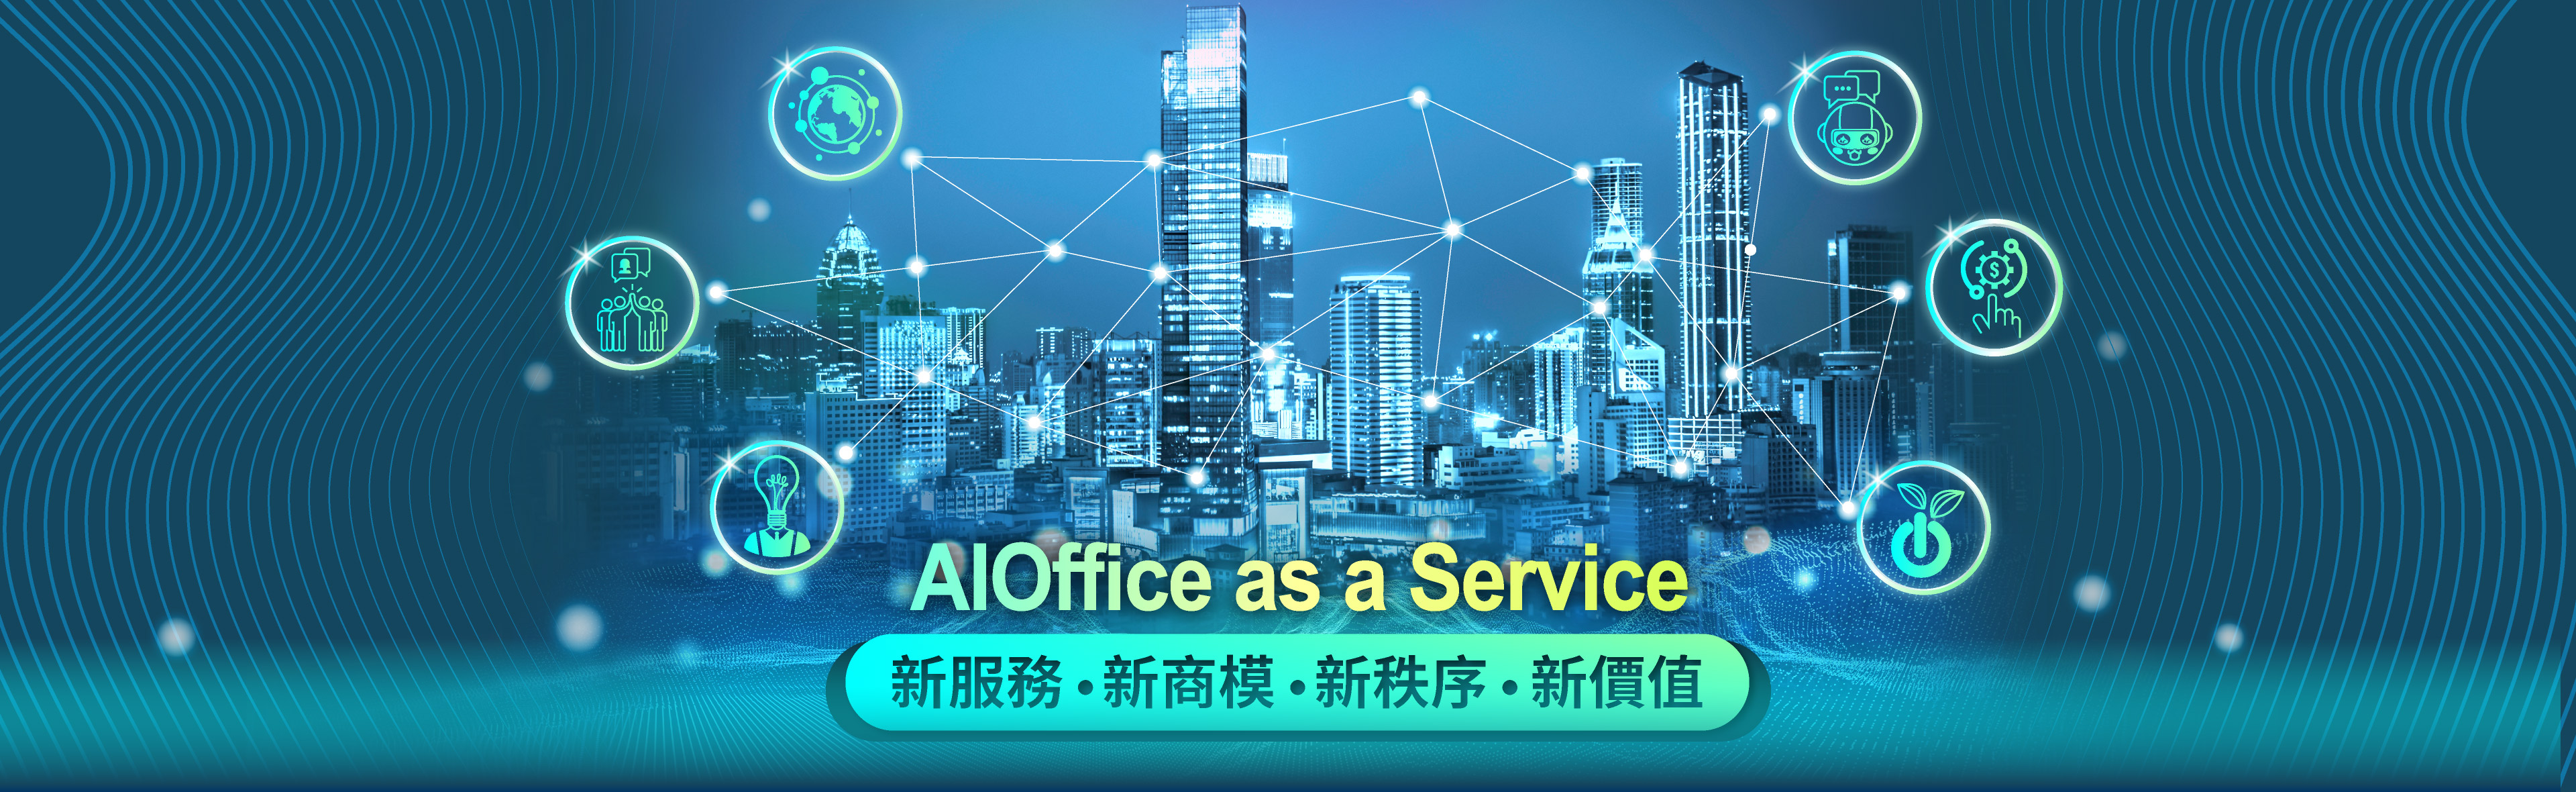 AIOffice-as-a-Service-新服務、新商模、新秩序、新價值